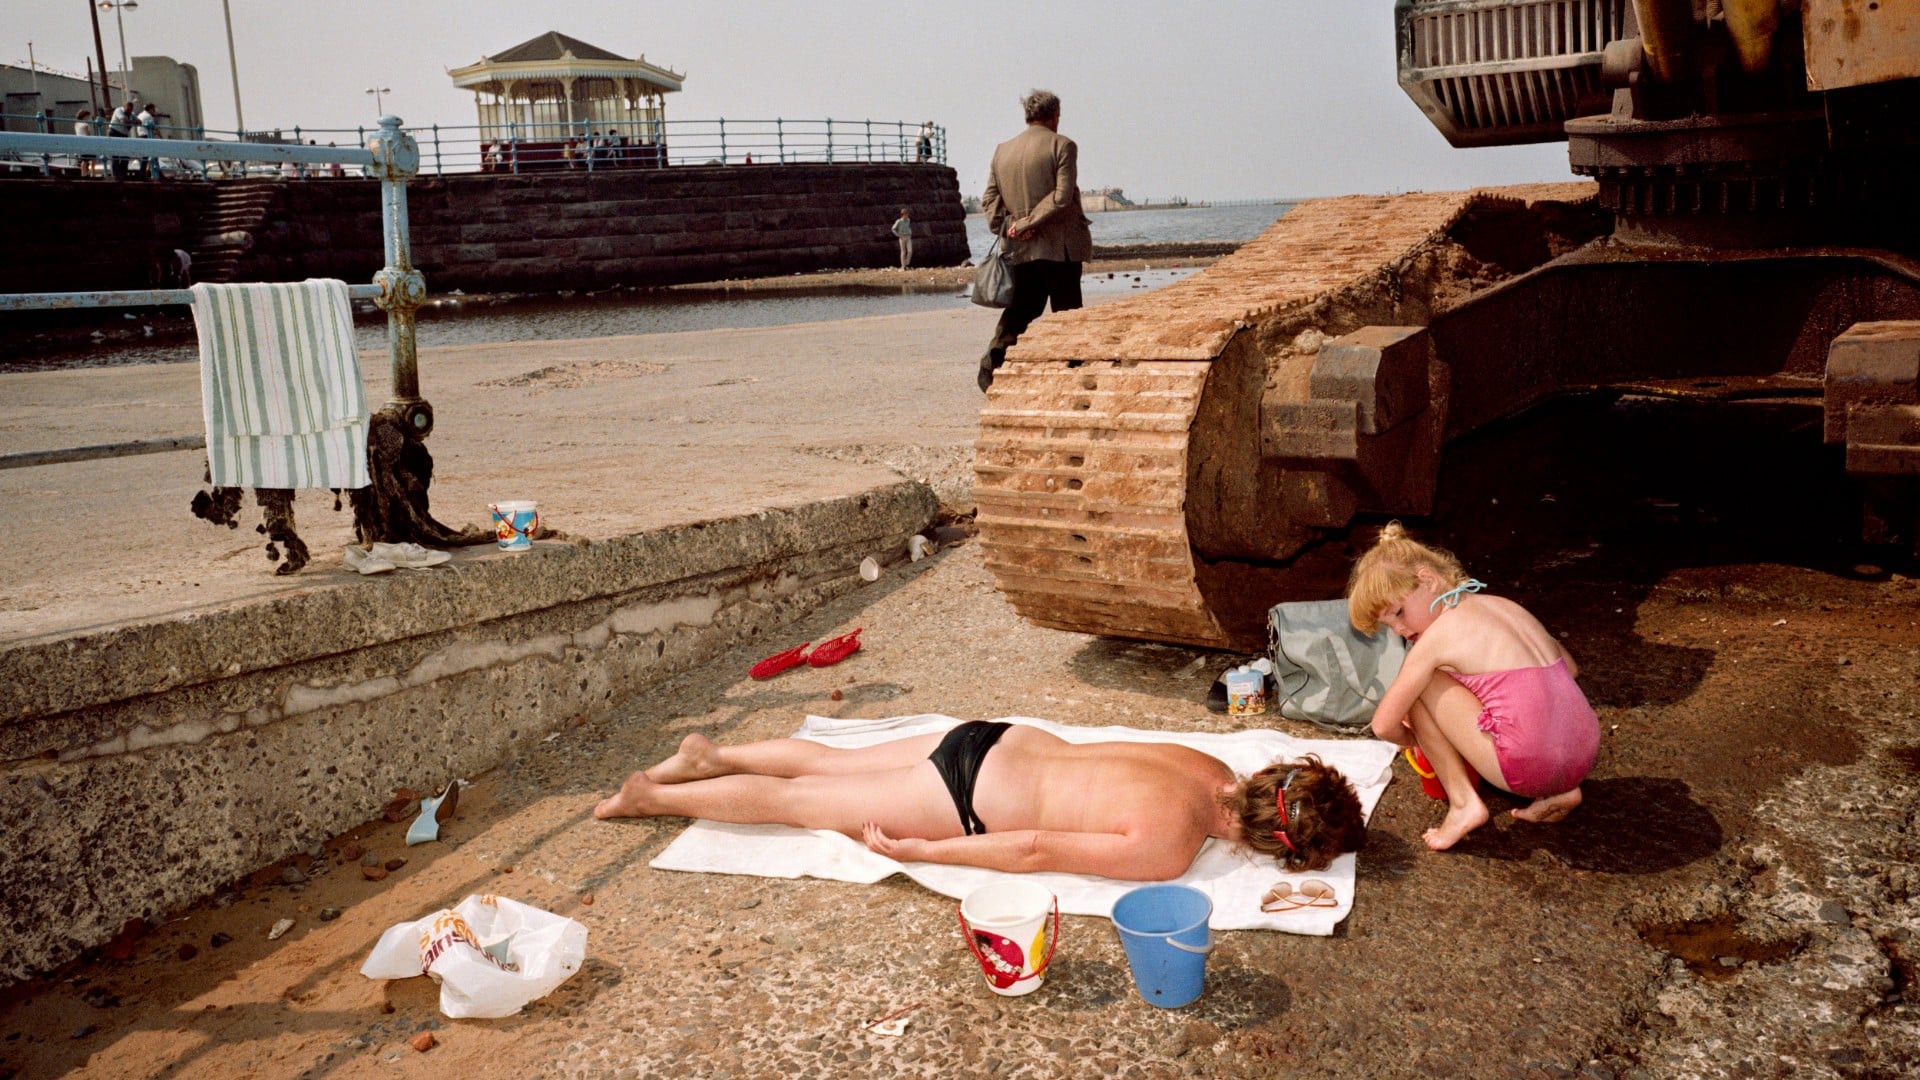 Gros plan sur deux enfants anglais jouant comme à la plage à l'ombre d'un tank abandonné dans une fiche industrielle près de la plage